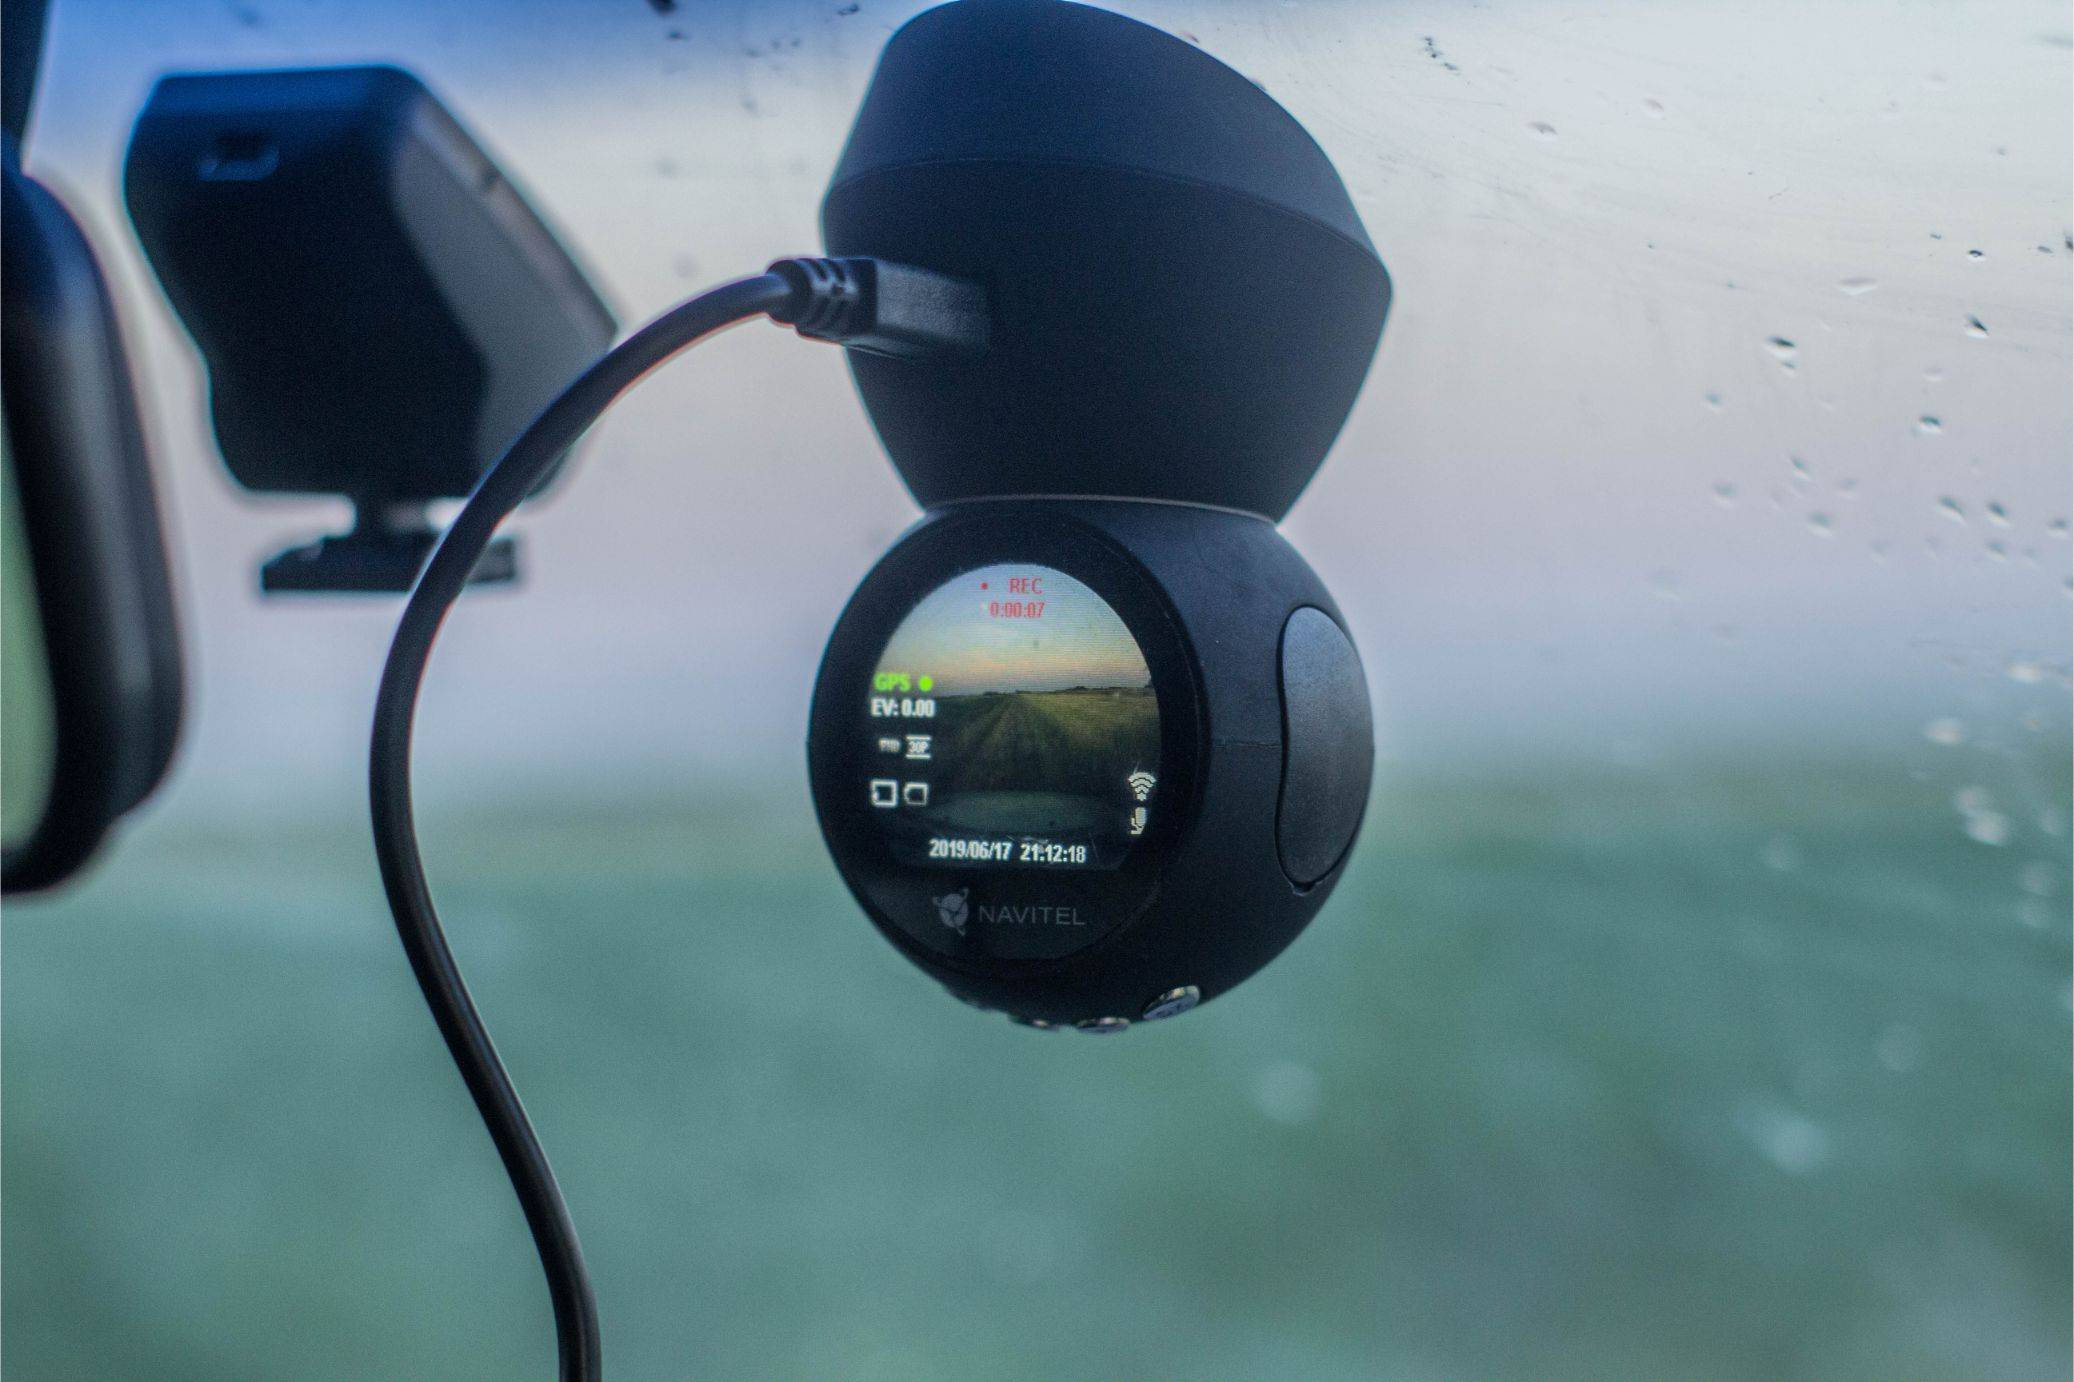 Обзор видеорегистратора с GPS и ночной съёмкой - Navitel R600 GPS